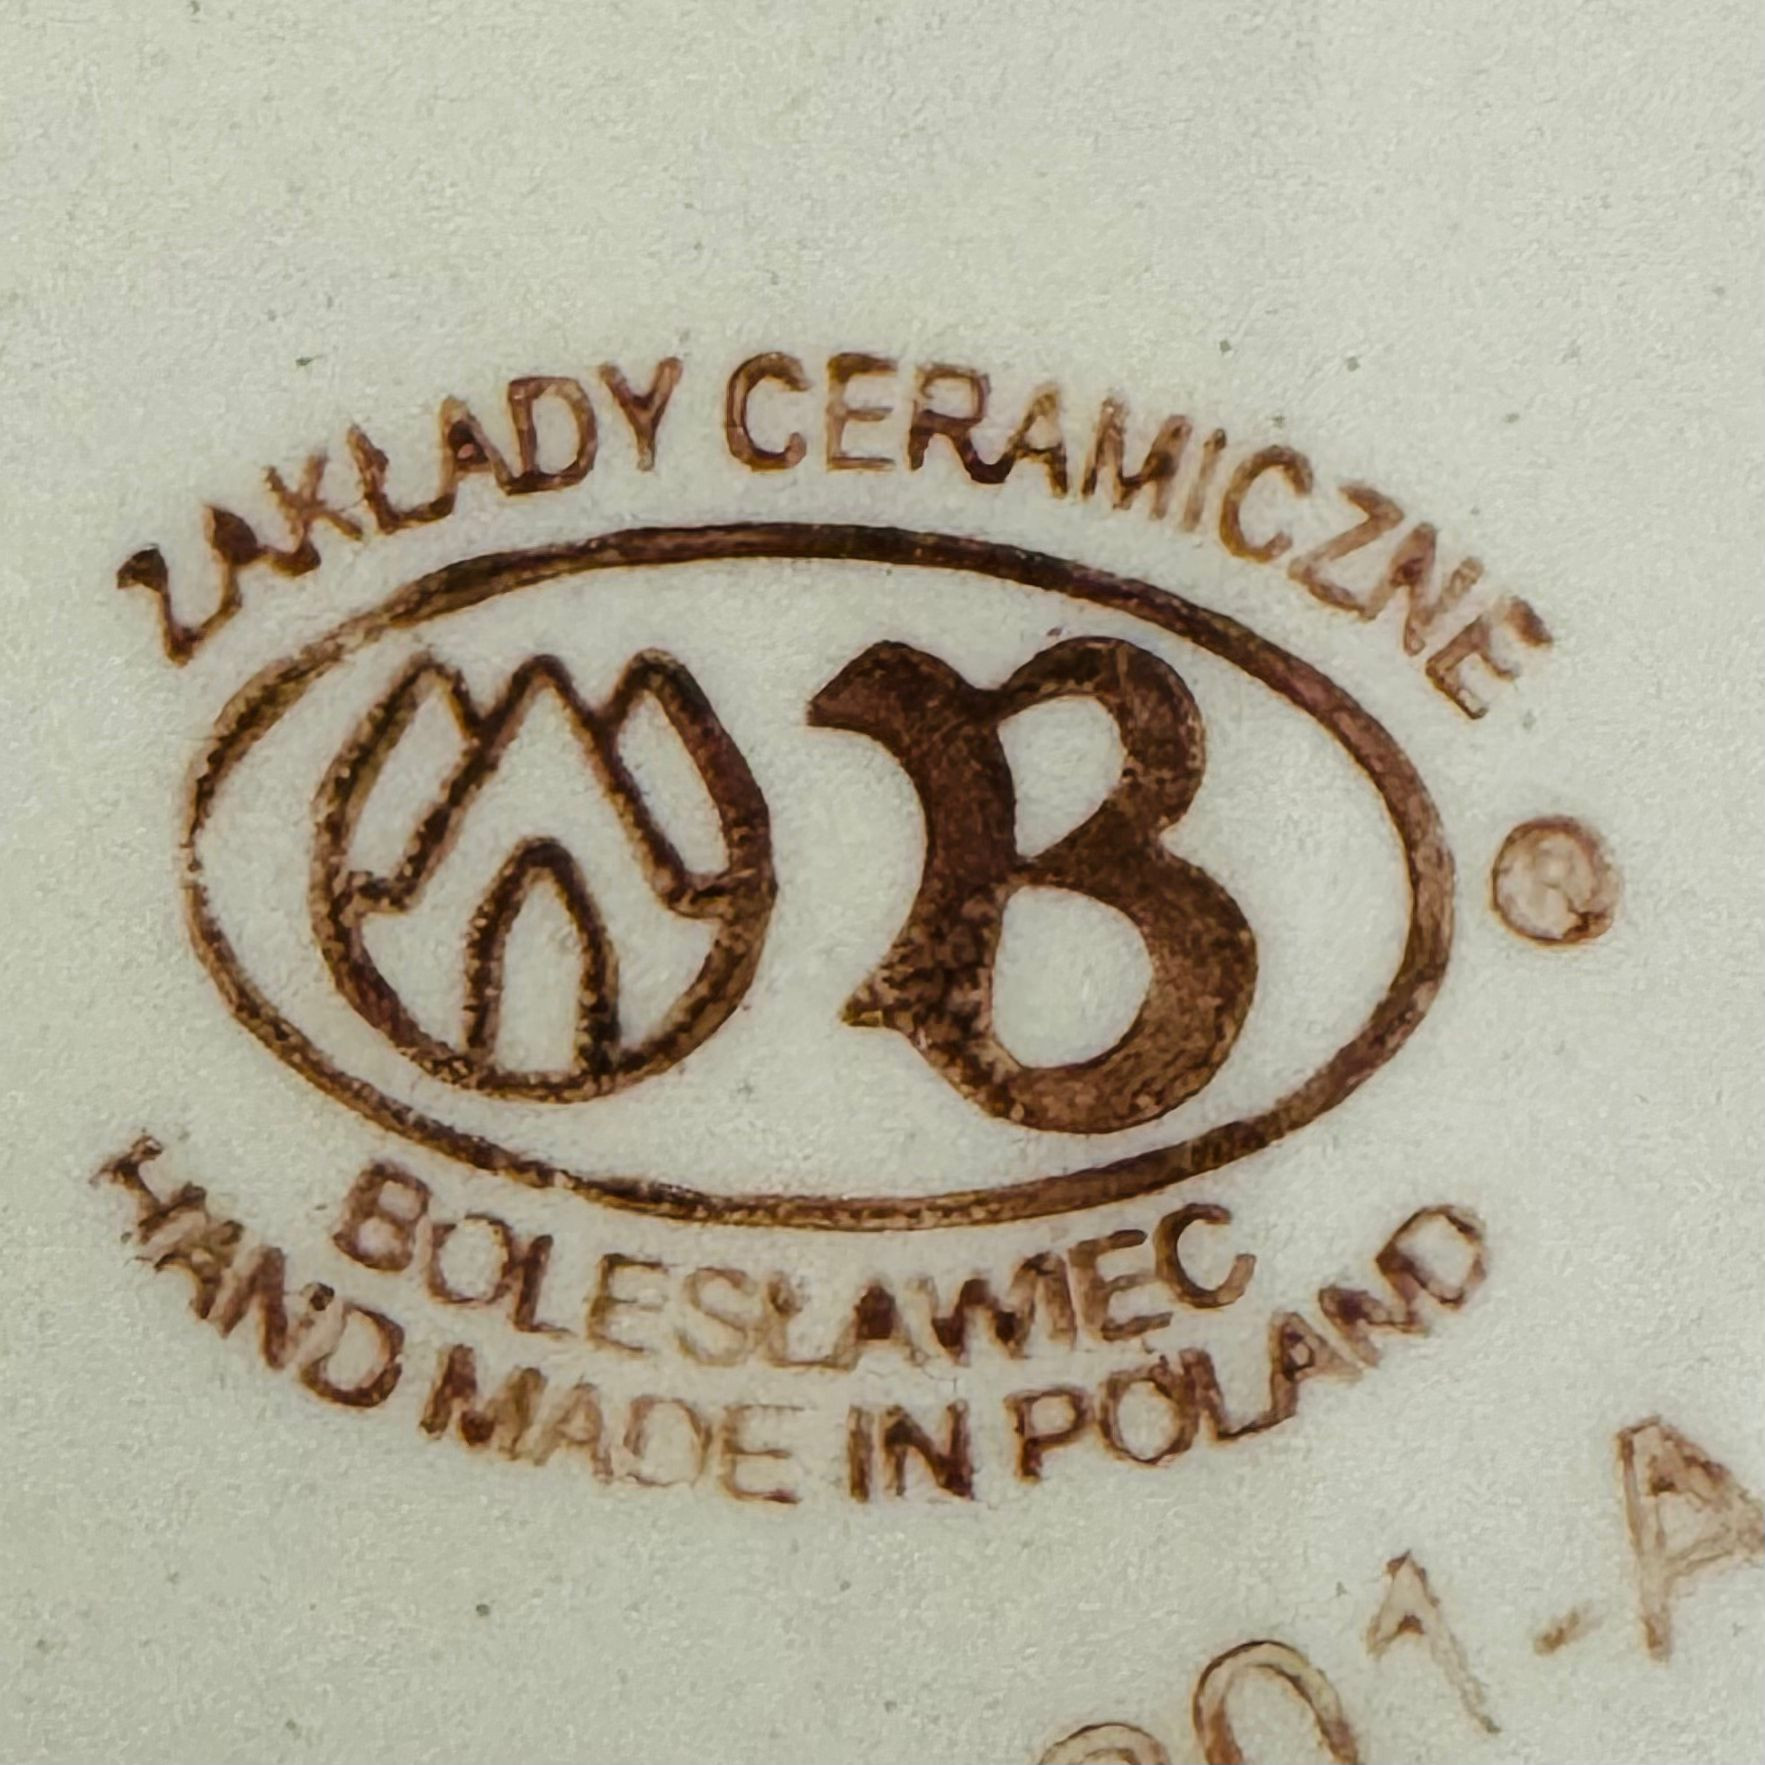 Zakłady Ceramiczne "Bolesławiec"